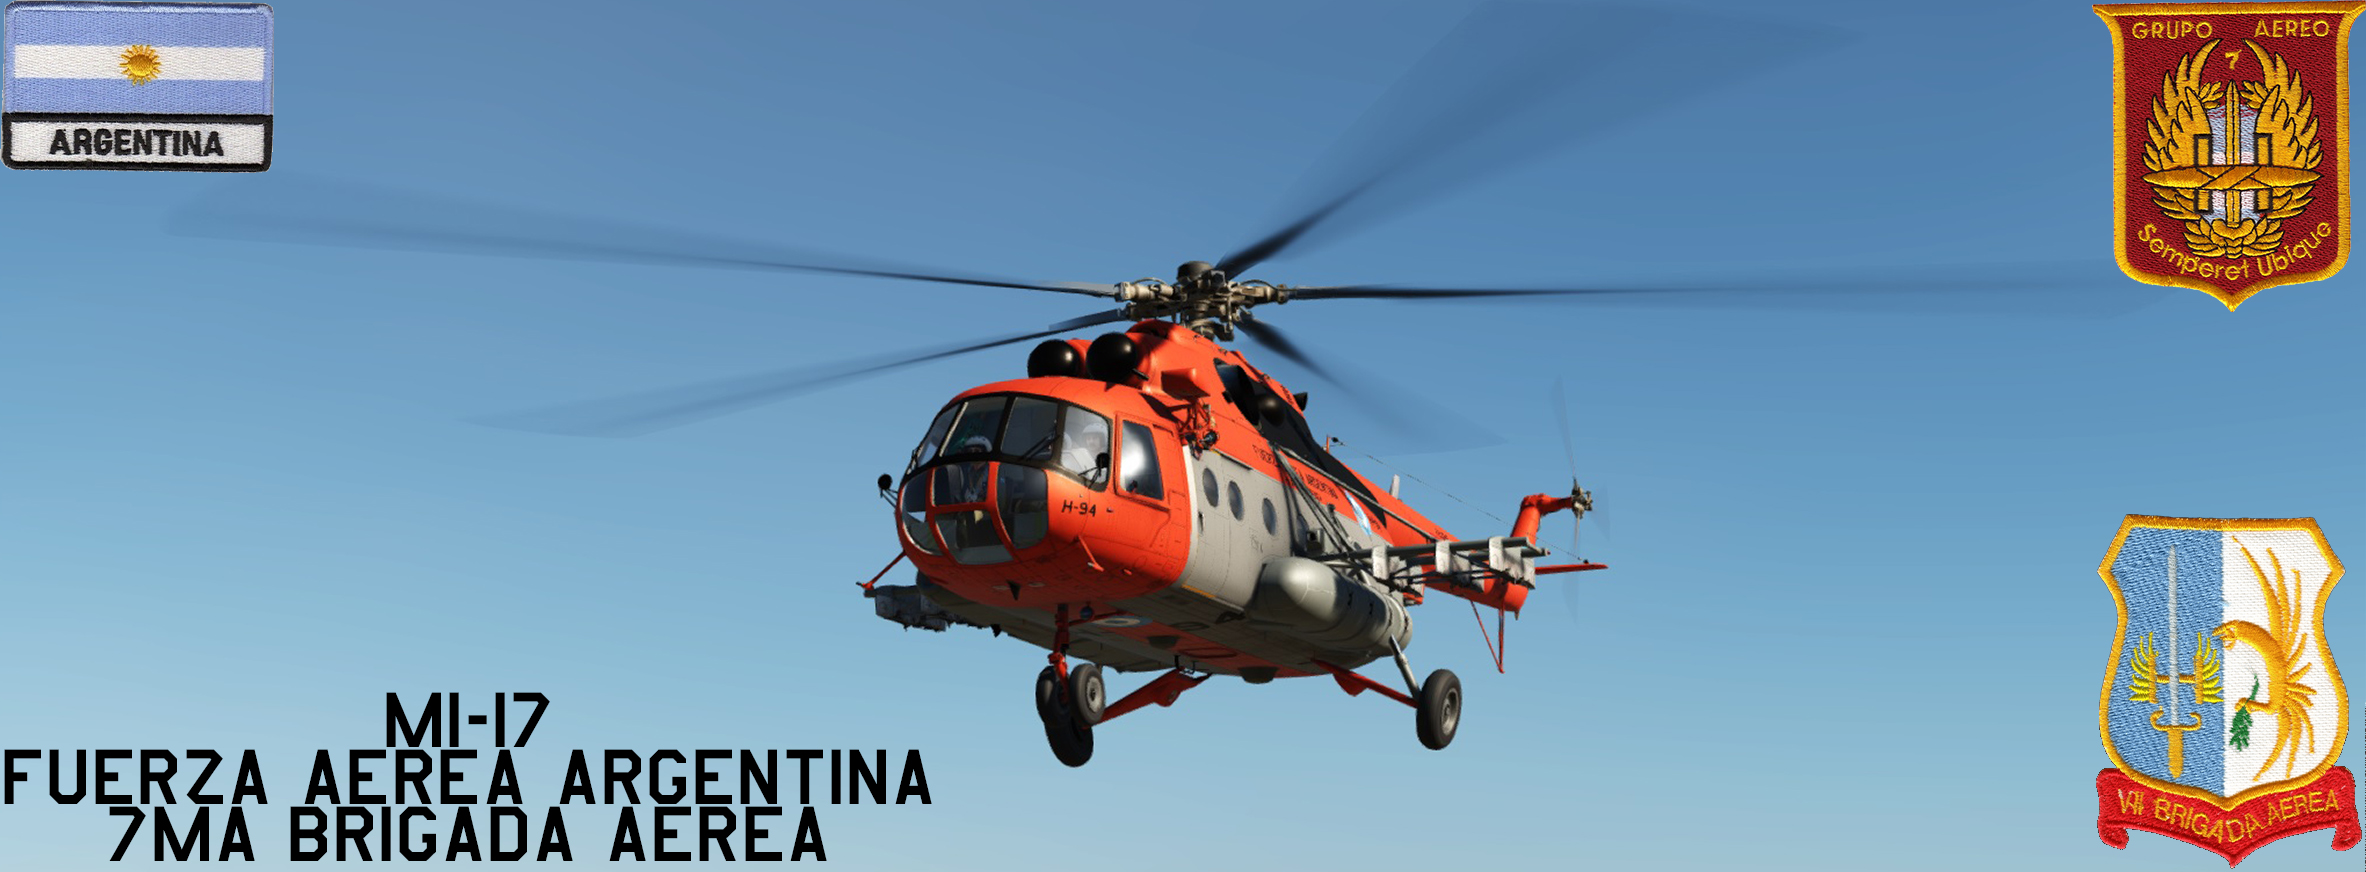 Argentina Mi-8 7ma Br Aerea Update 17Ago22